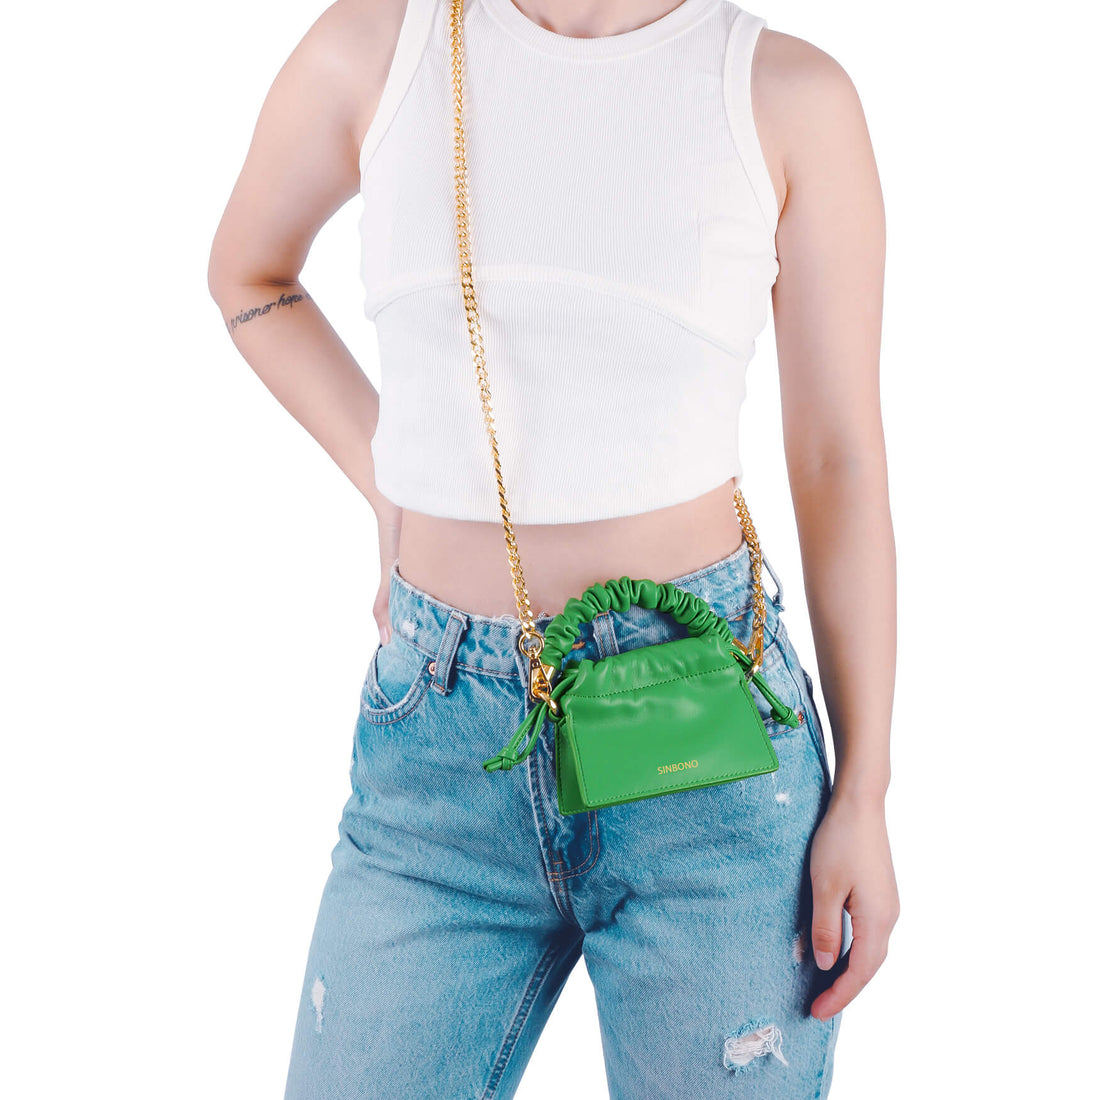 SINBONO Mini Drawstring Vegan Handbags Grass Green